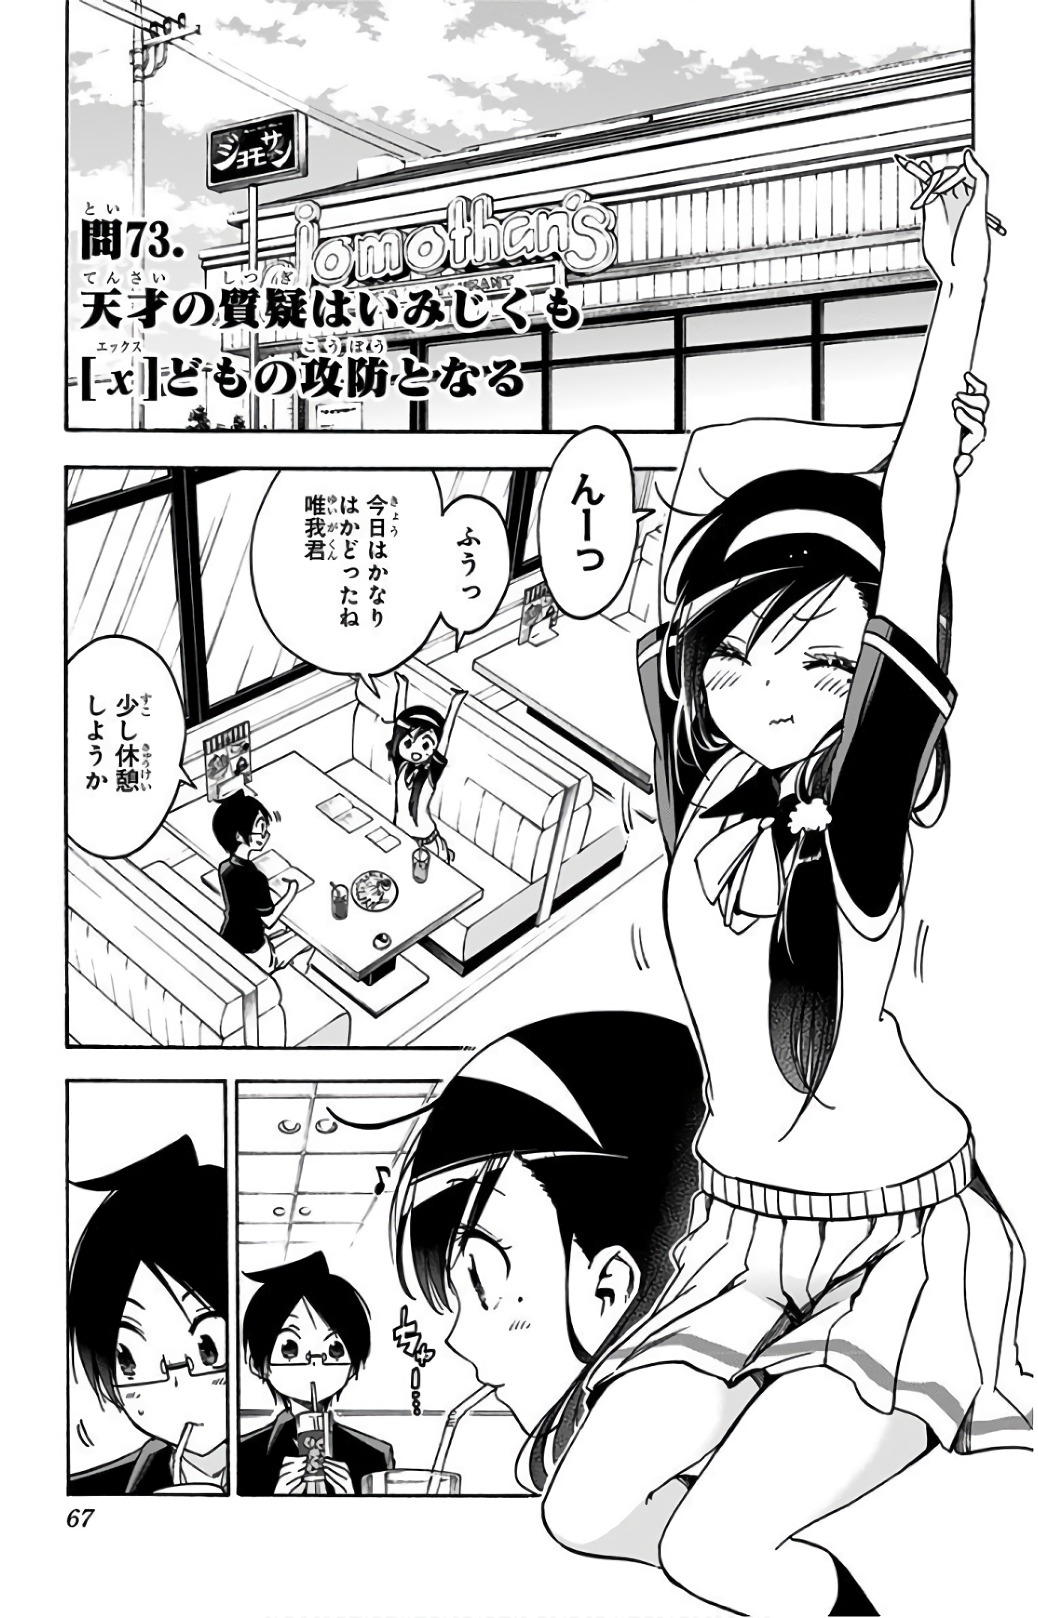 Bokutachi wa Benkyou ga Dekinai - Chapter 73 - Page 1